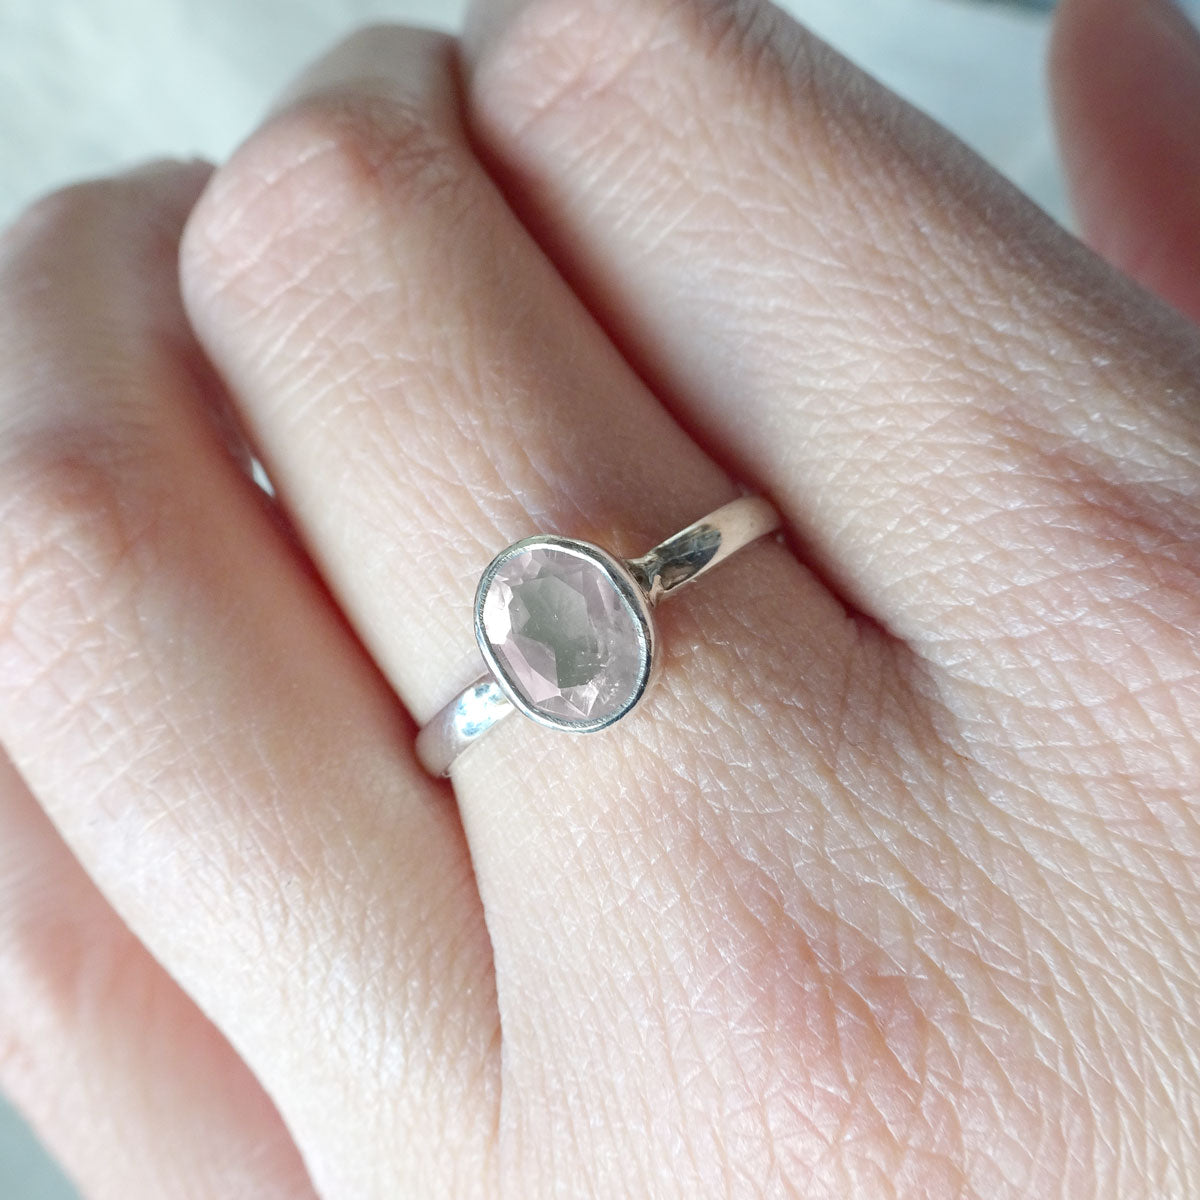 Maira | Ring 925 zilver met rozenkwarts